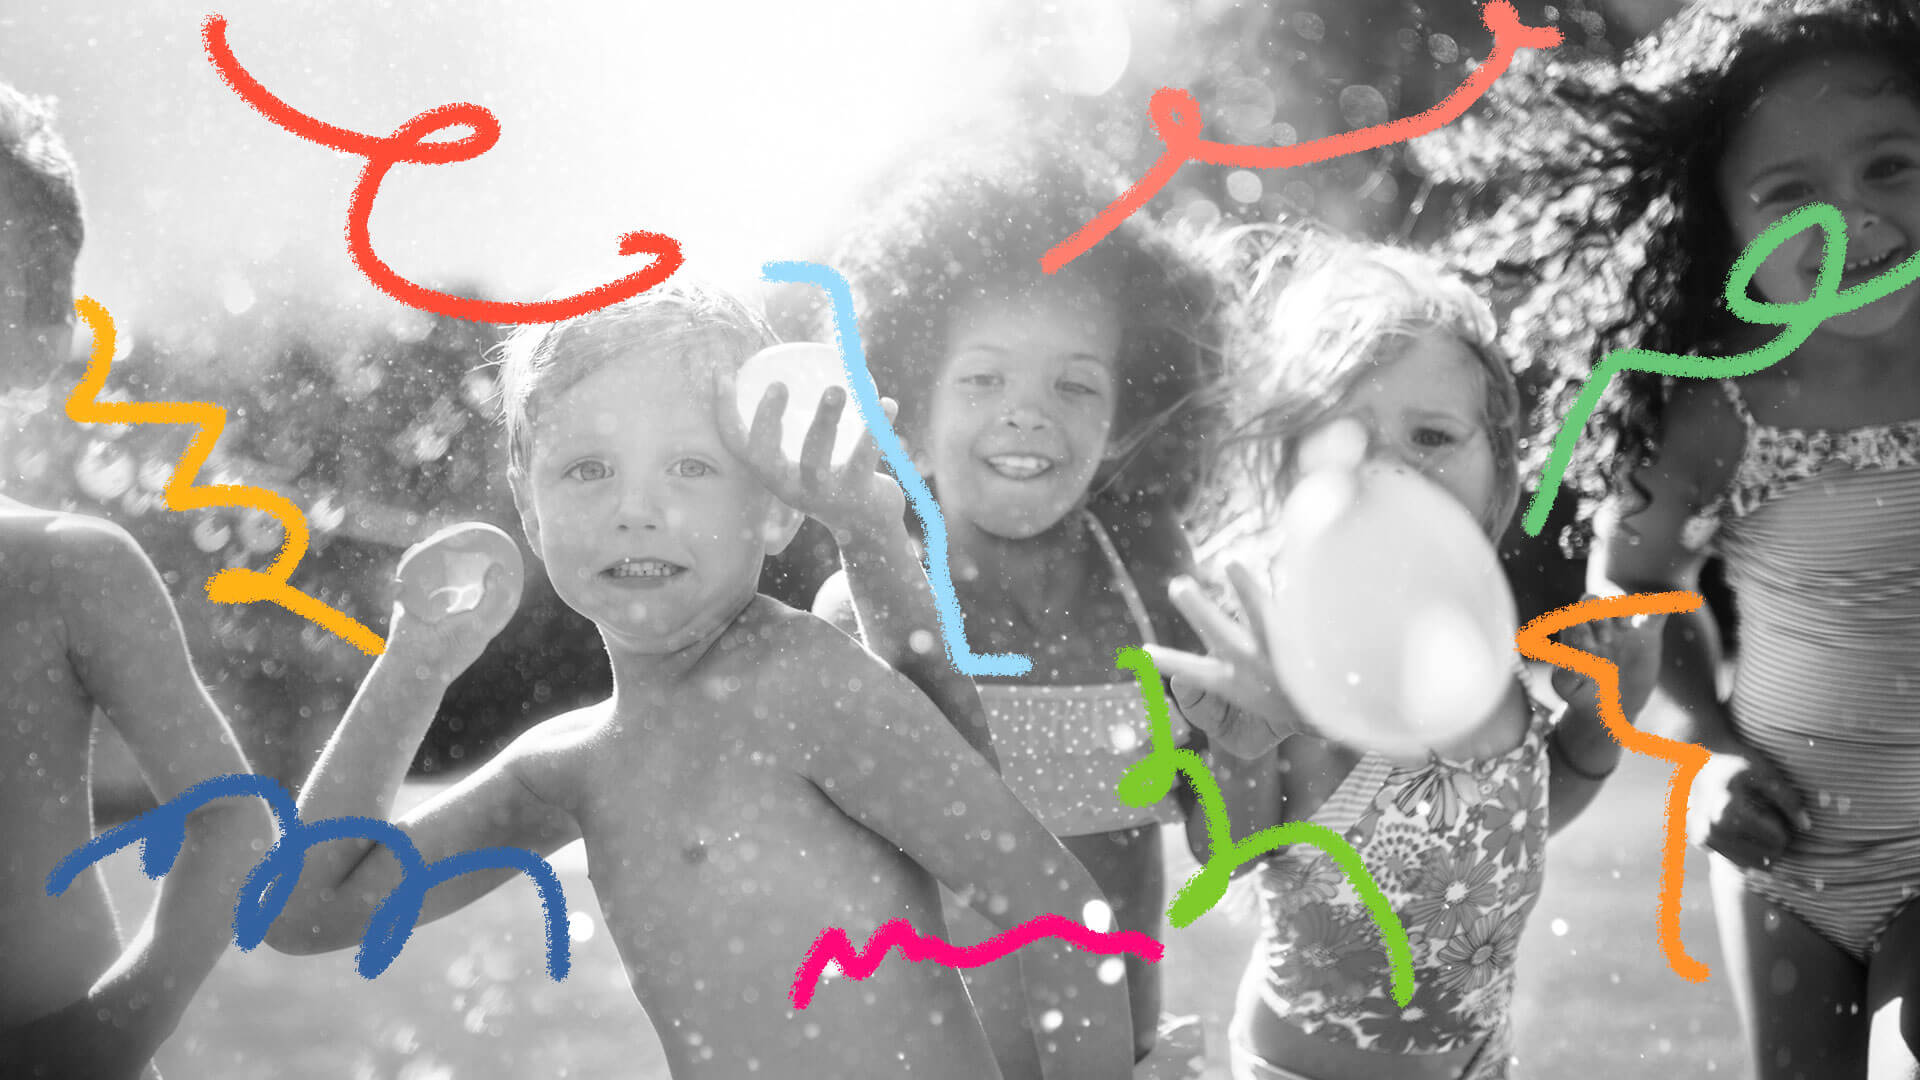 Três crianças (um menino e duas meninas) brincam com bexigas d'água.